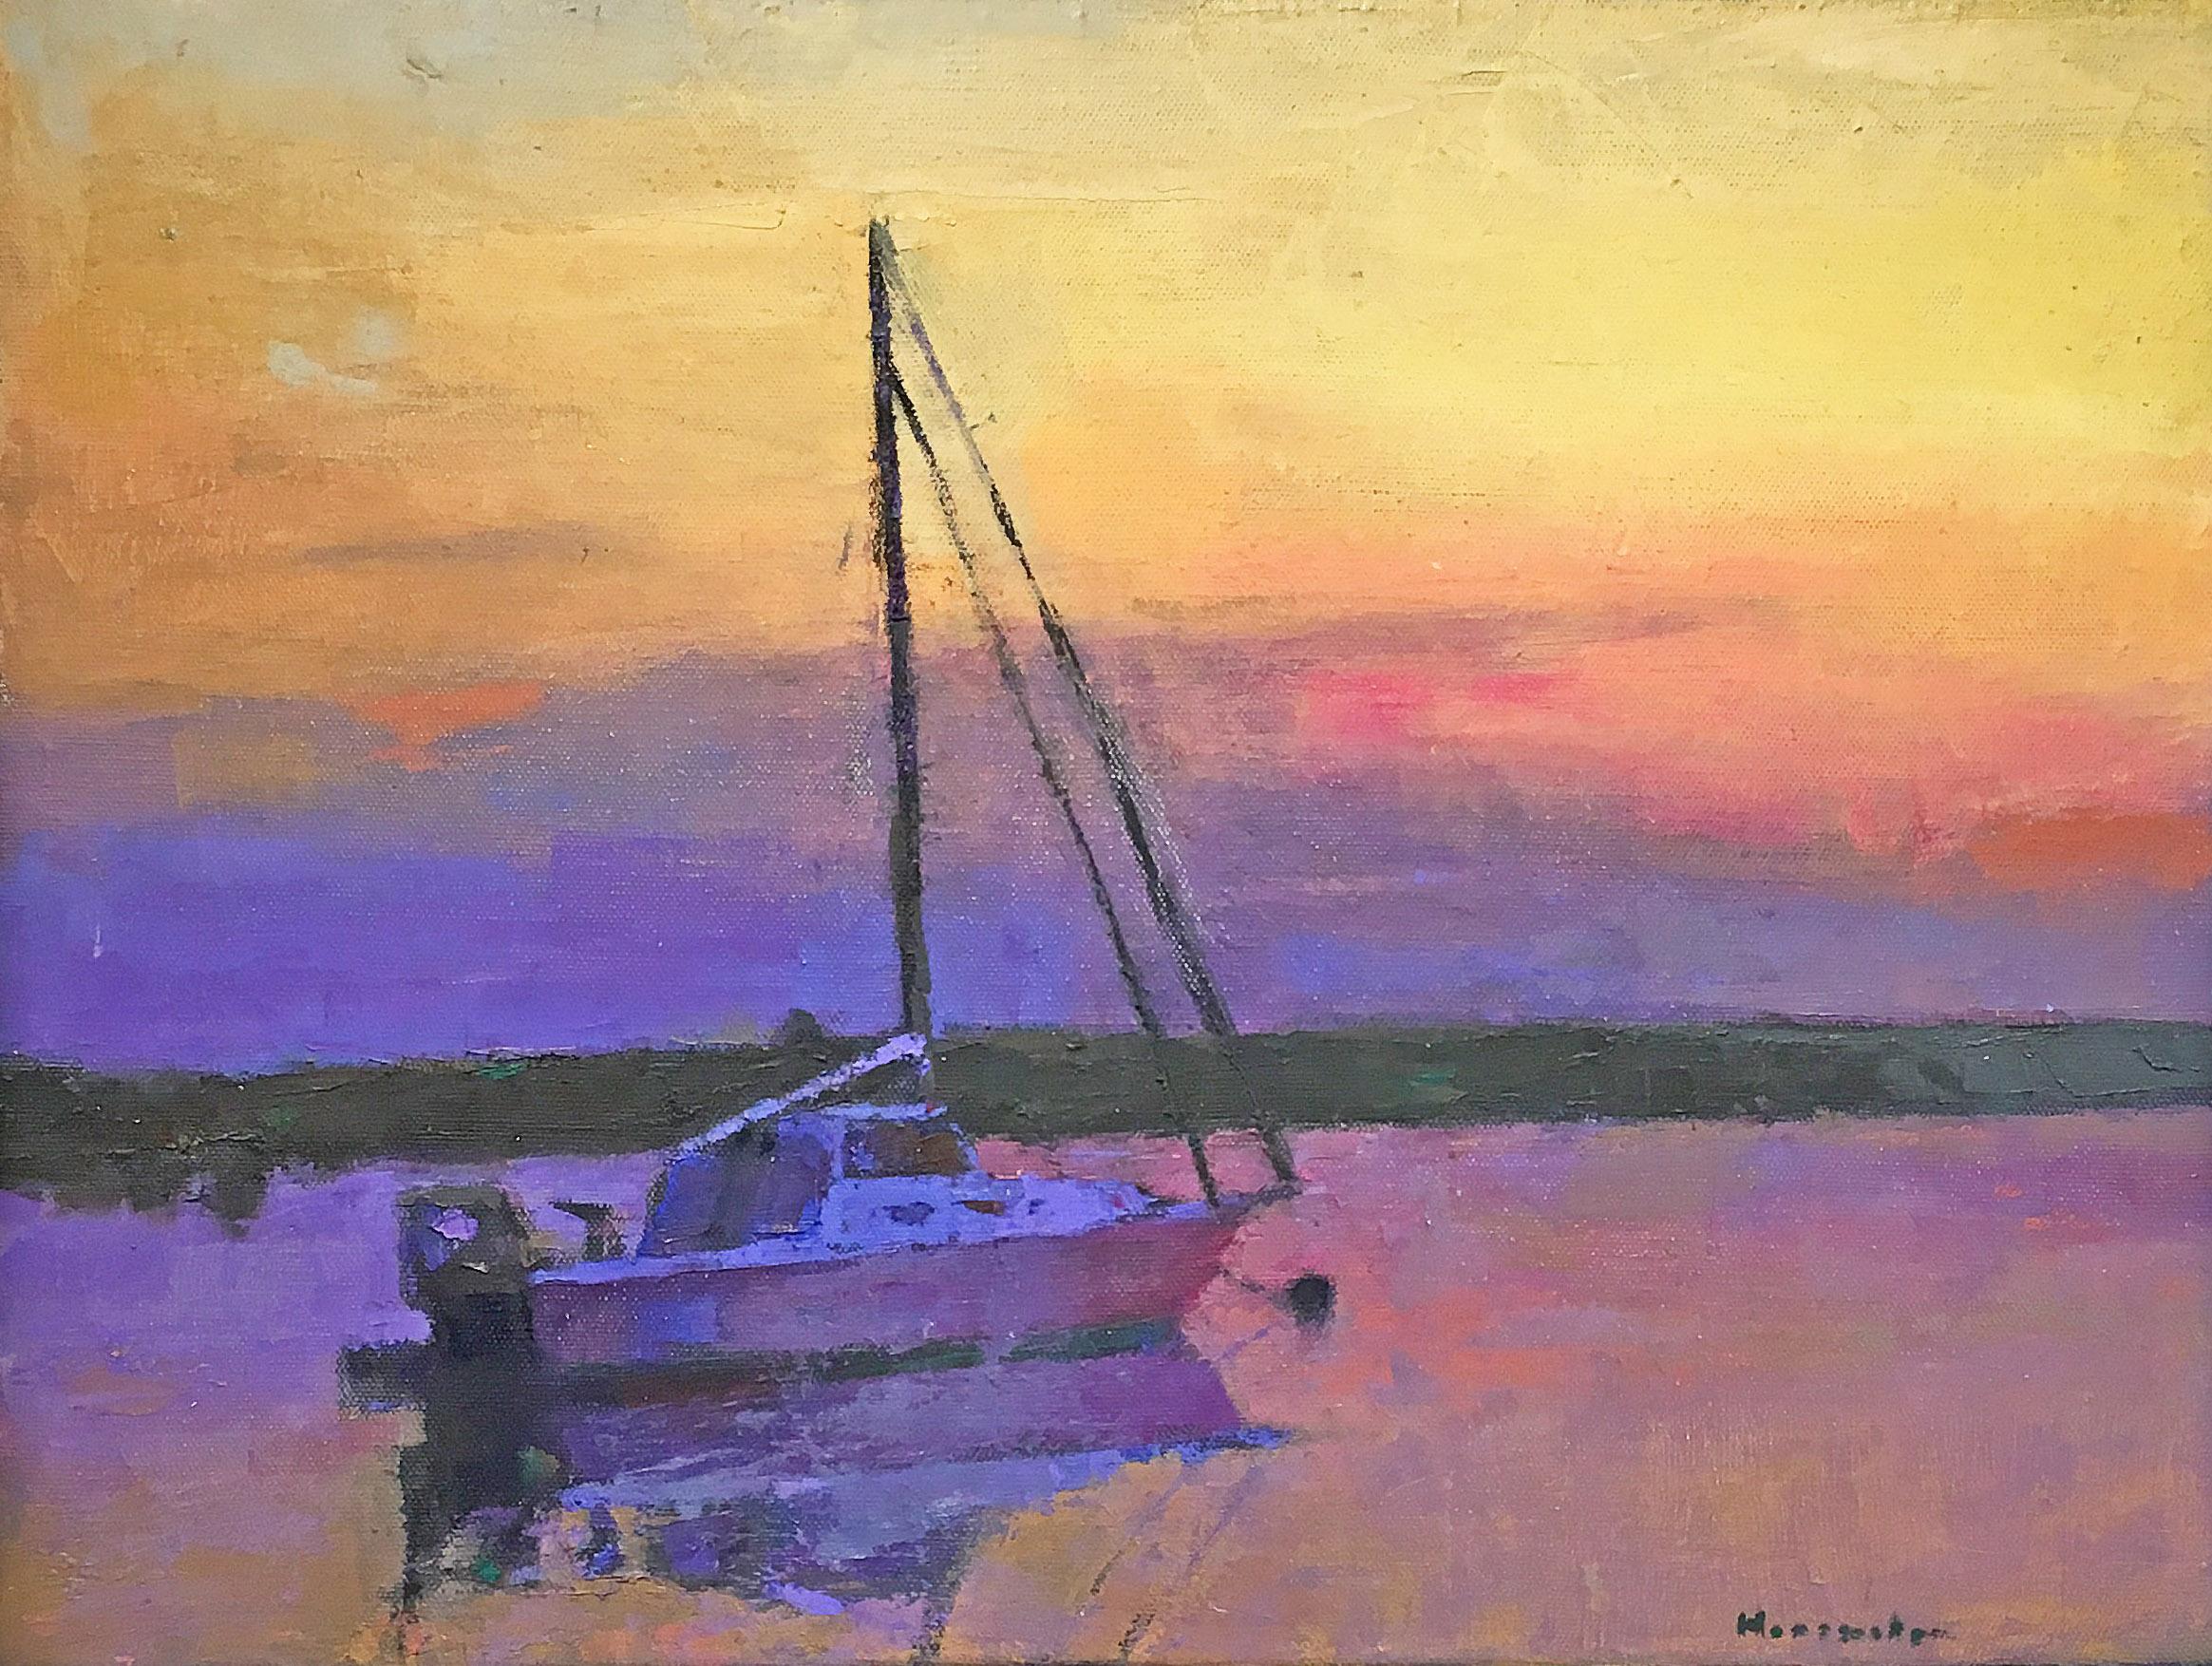 Sailboat With Sunset Sky" 2017 von Larry Horowitz, einem zeitgenössischen amerikanischen Landschaftsimpressionisten. Öl auf Leinwand, 18 x 24 cm. Dieses Gemälde zeigt eine impressionistische Landschaft mit einem Segelboot auf dem Wasser in satten